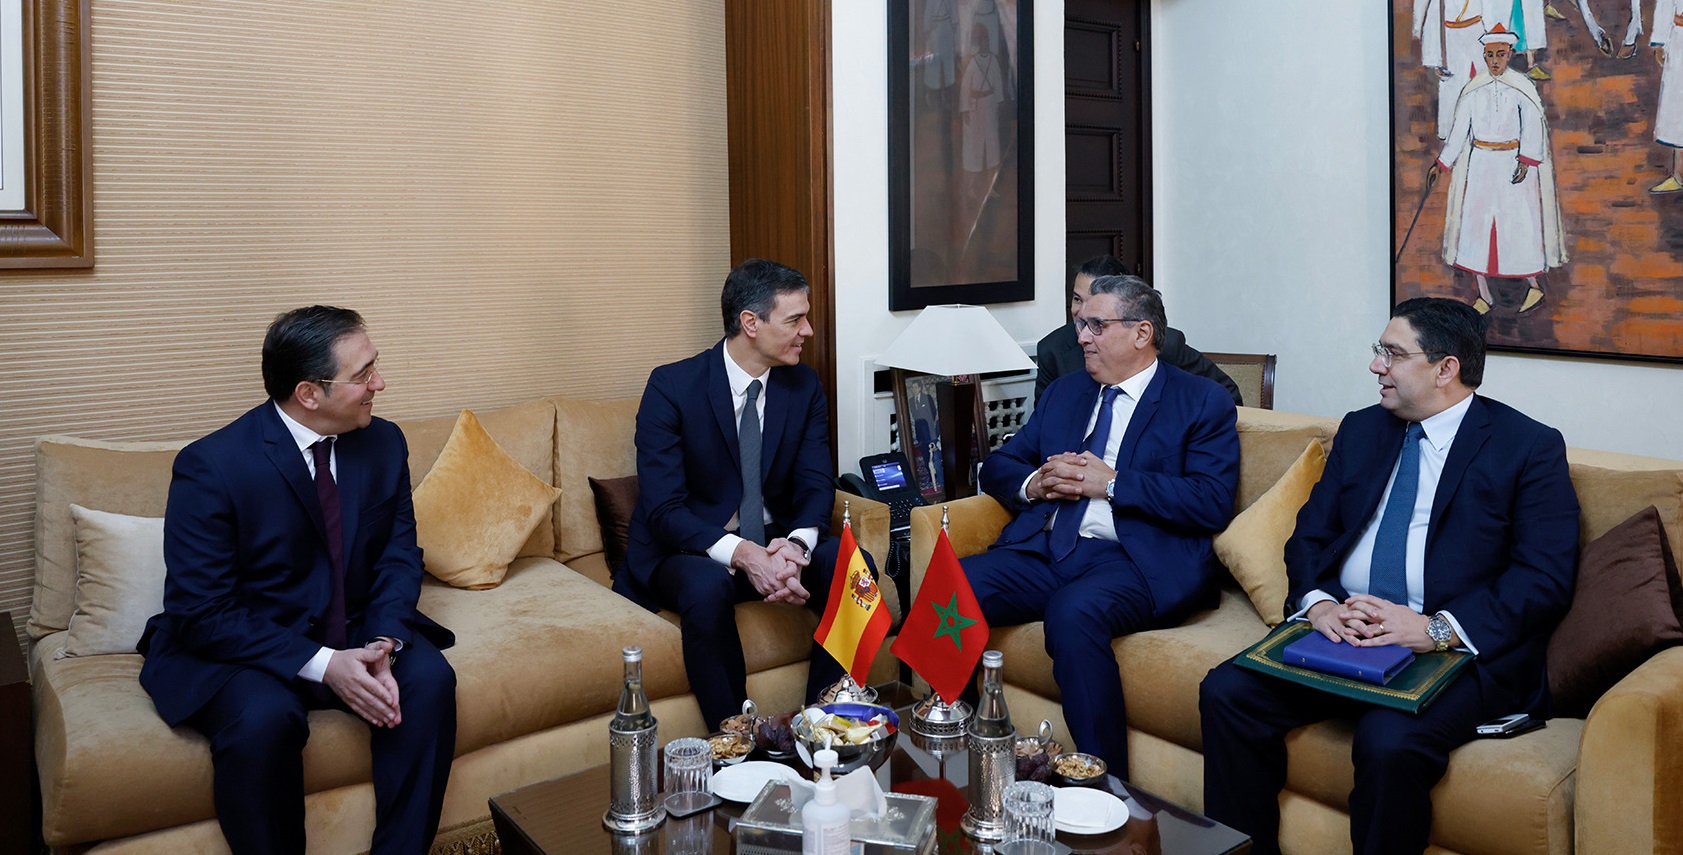 المغرب وإسبانيا يعربان عن التزامهما باستدامة العلاقات الممتازة التي جمعتهما على الدوام (إعلان مشترك)